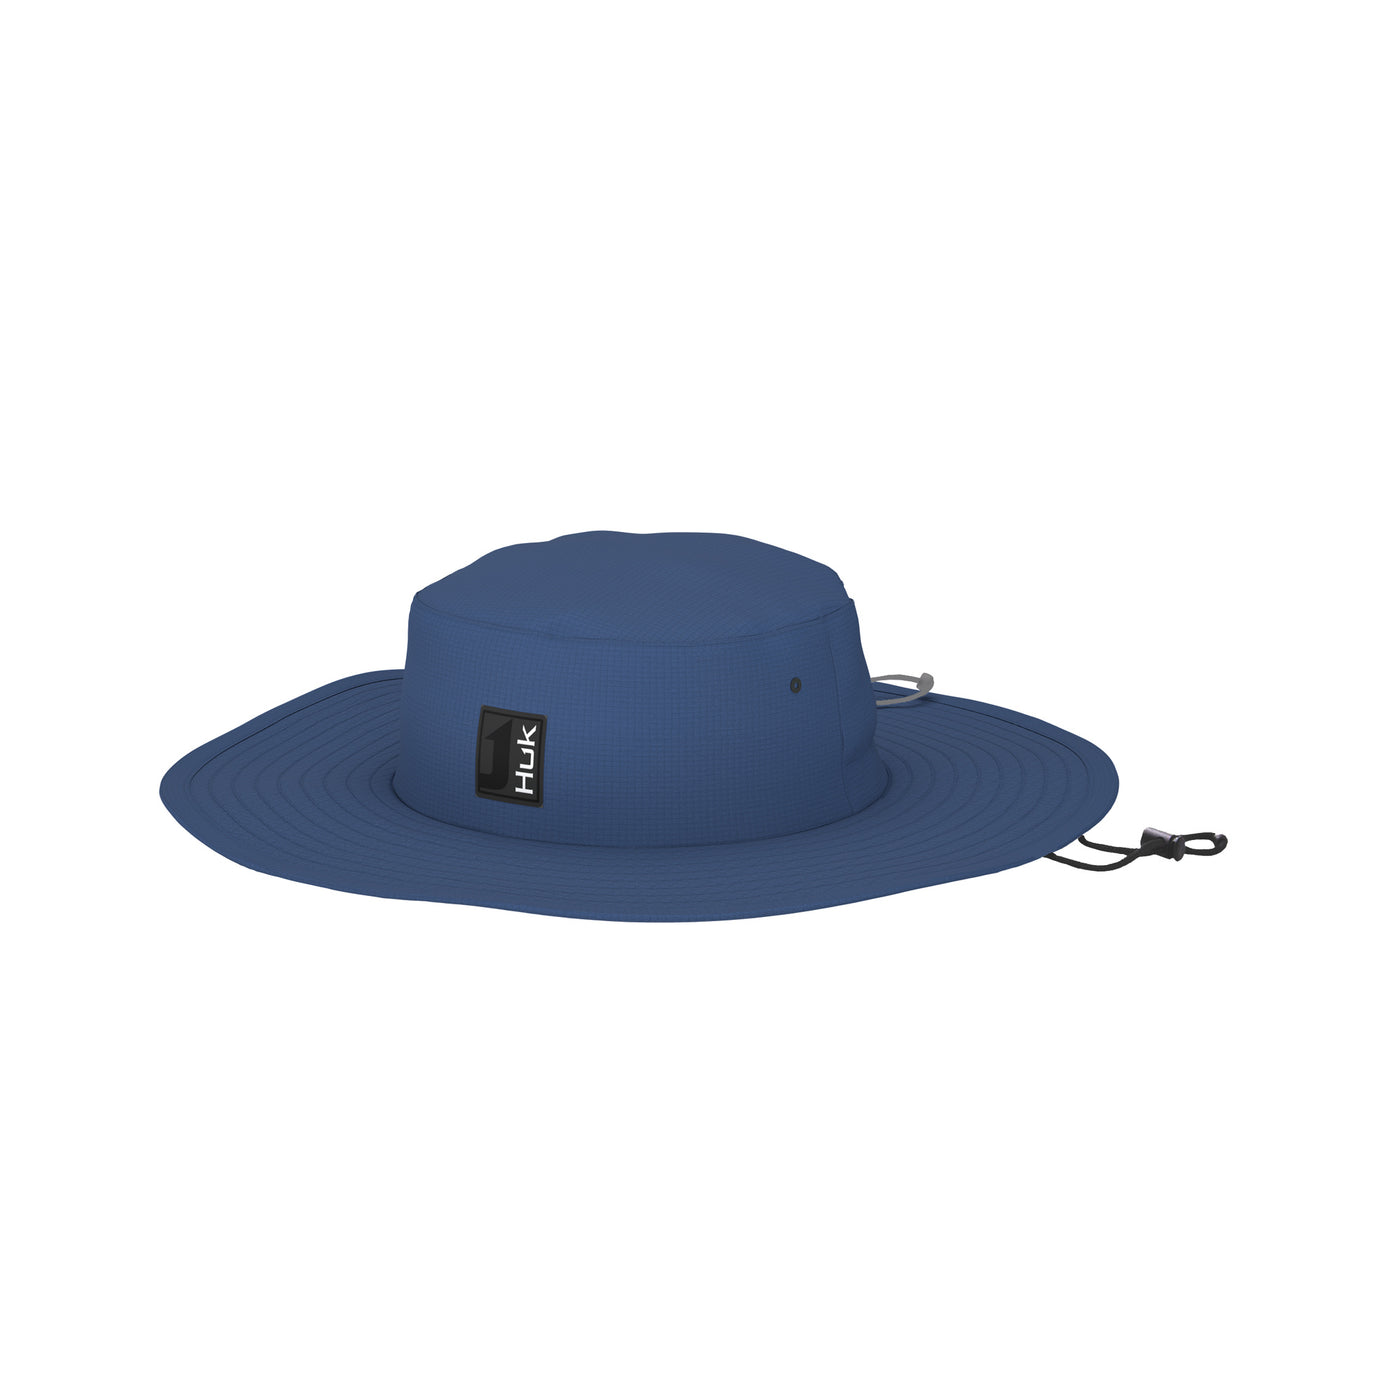 Huk Boonie Hat – Huk Gear